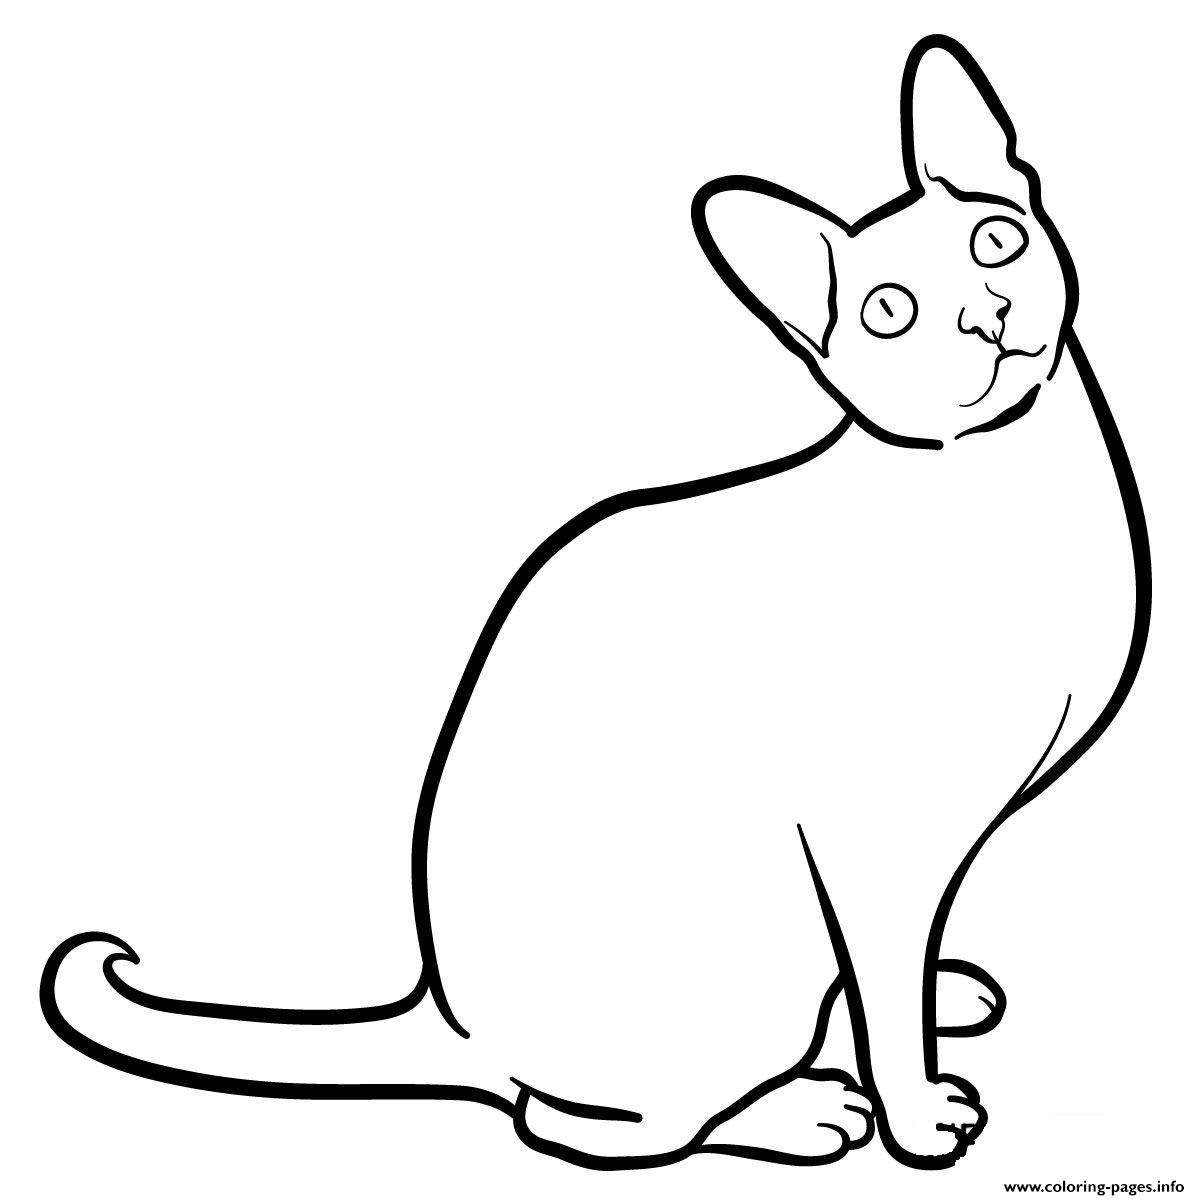 Cornish Rex Cat coloring